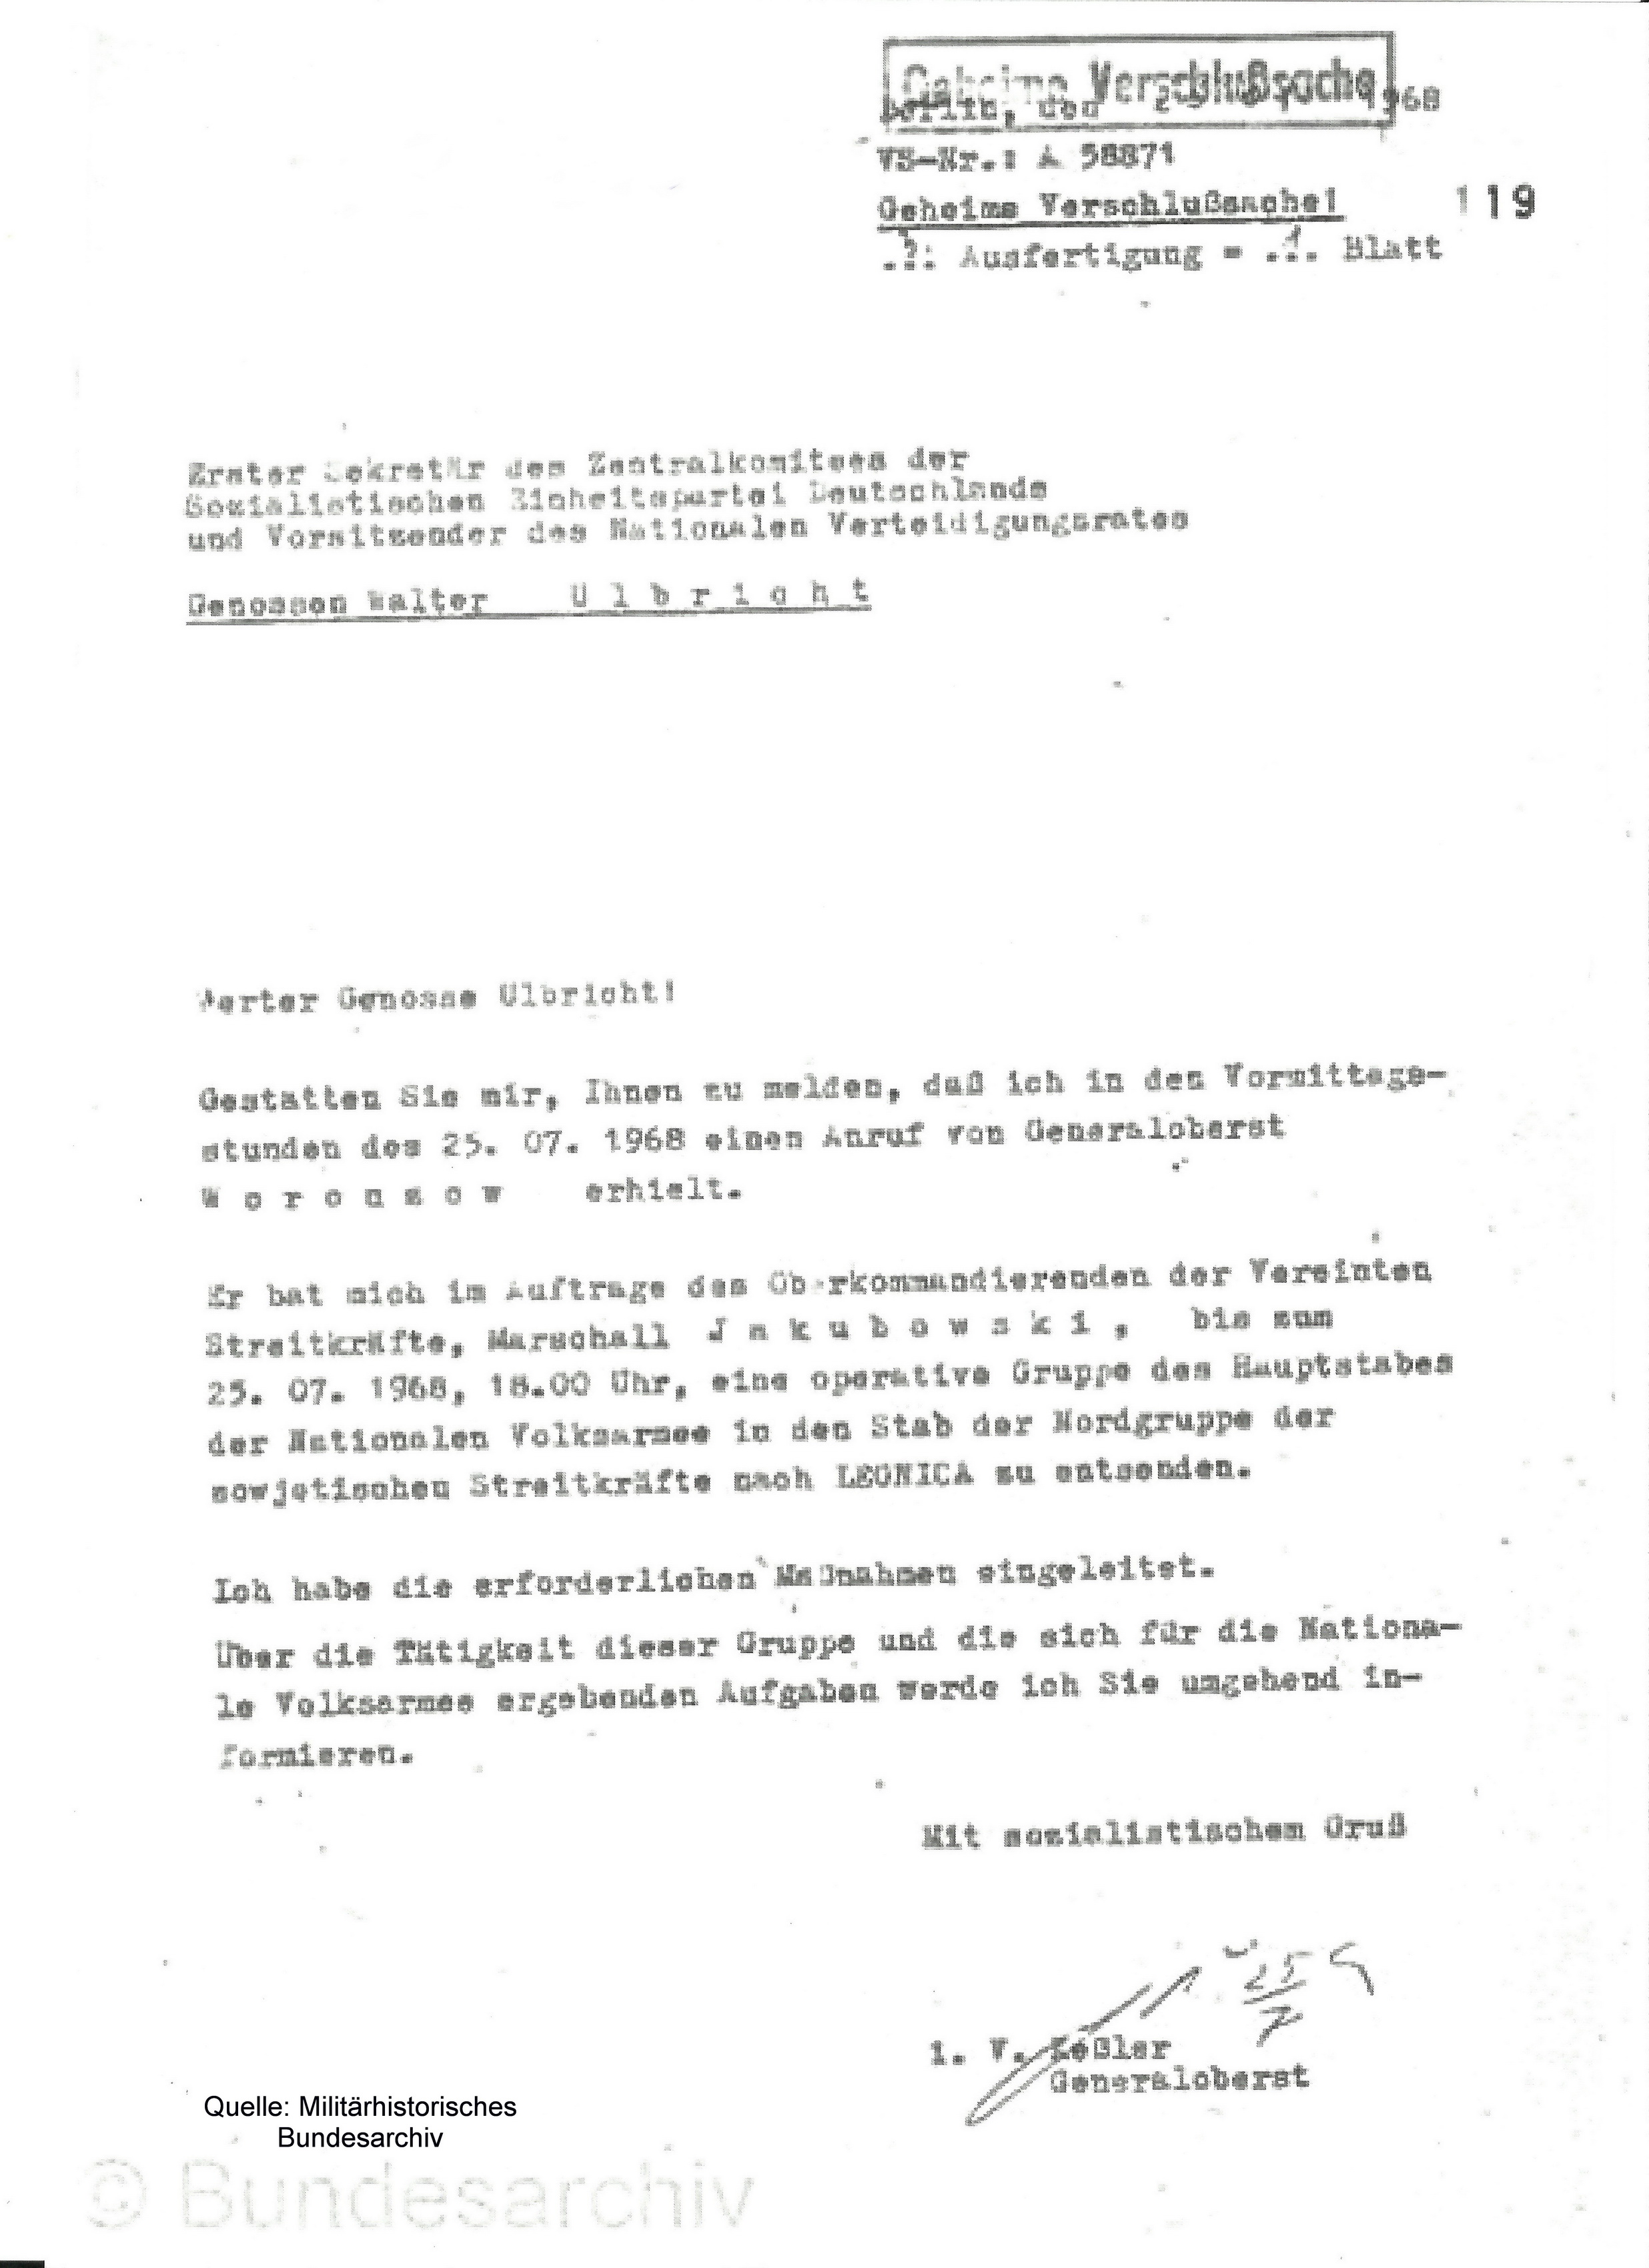 Brief von Armeegeneral Hoffmann an Walter Ulbricht, Quelle: Militäthistorisches Bundesarchiv